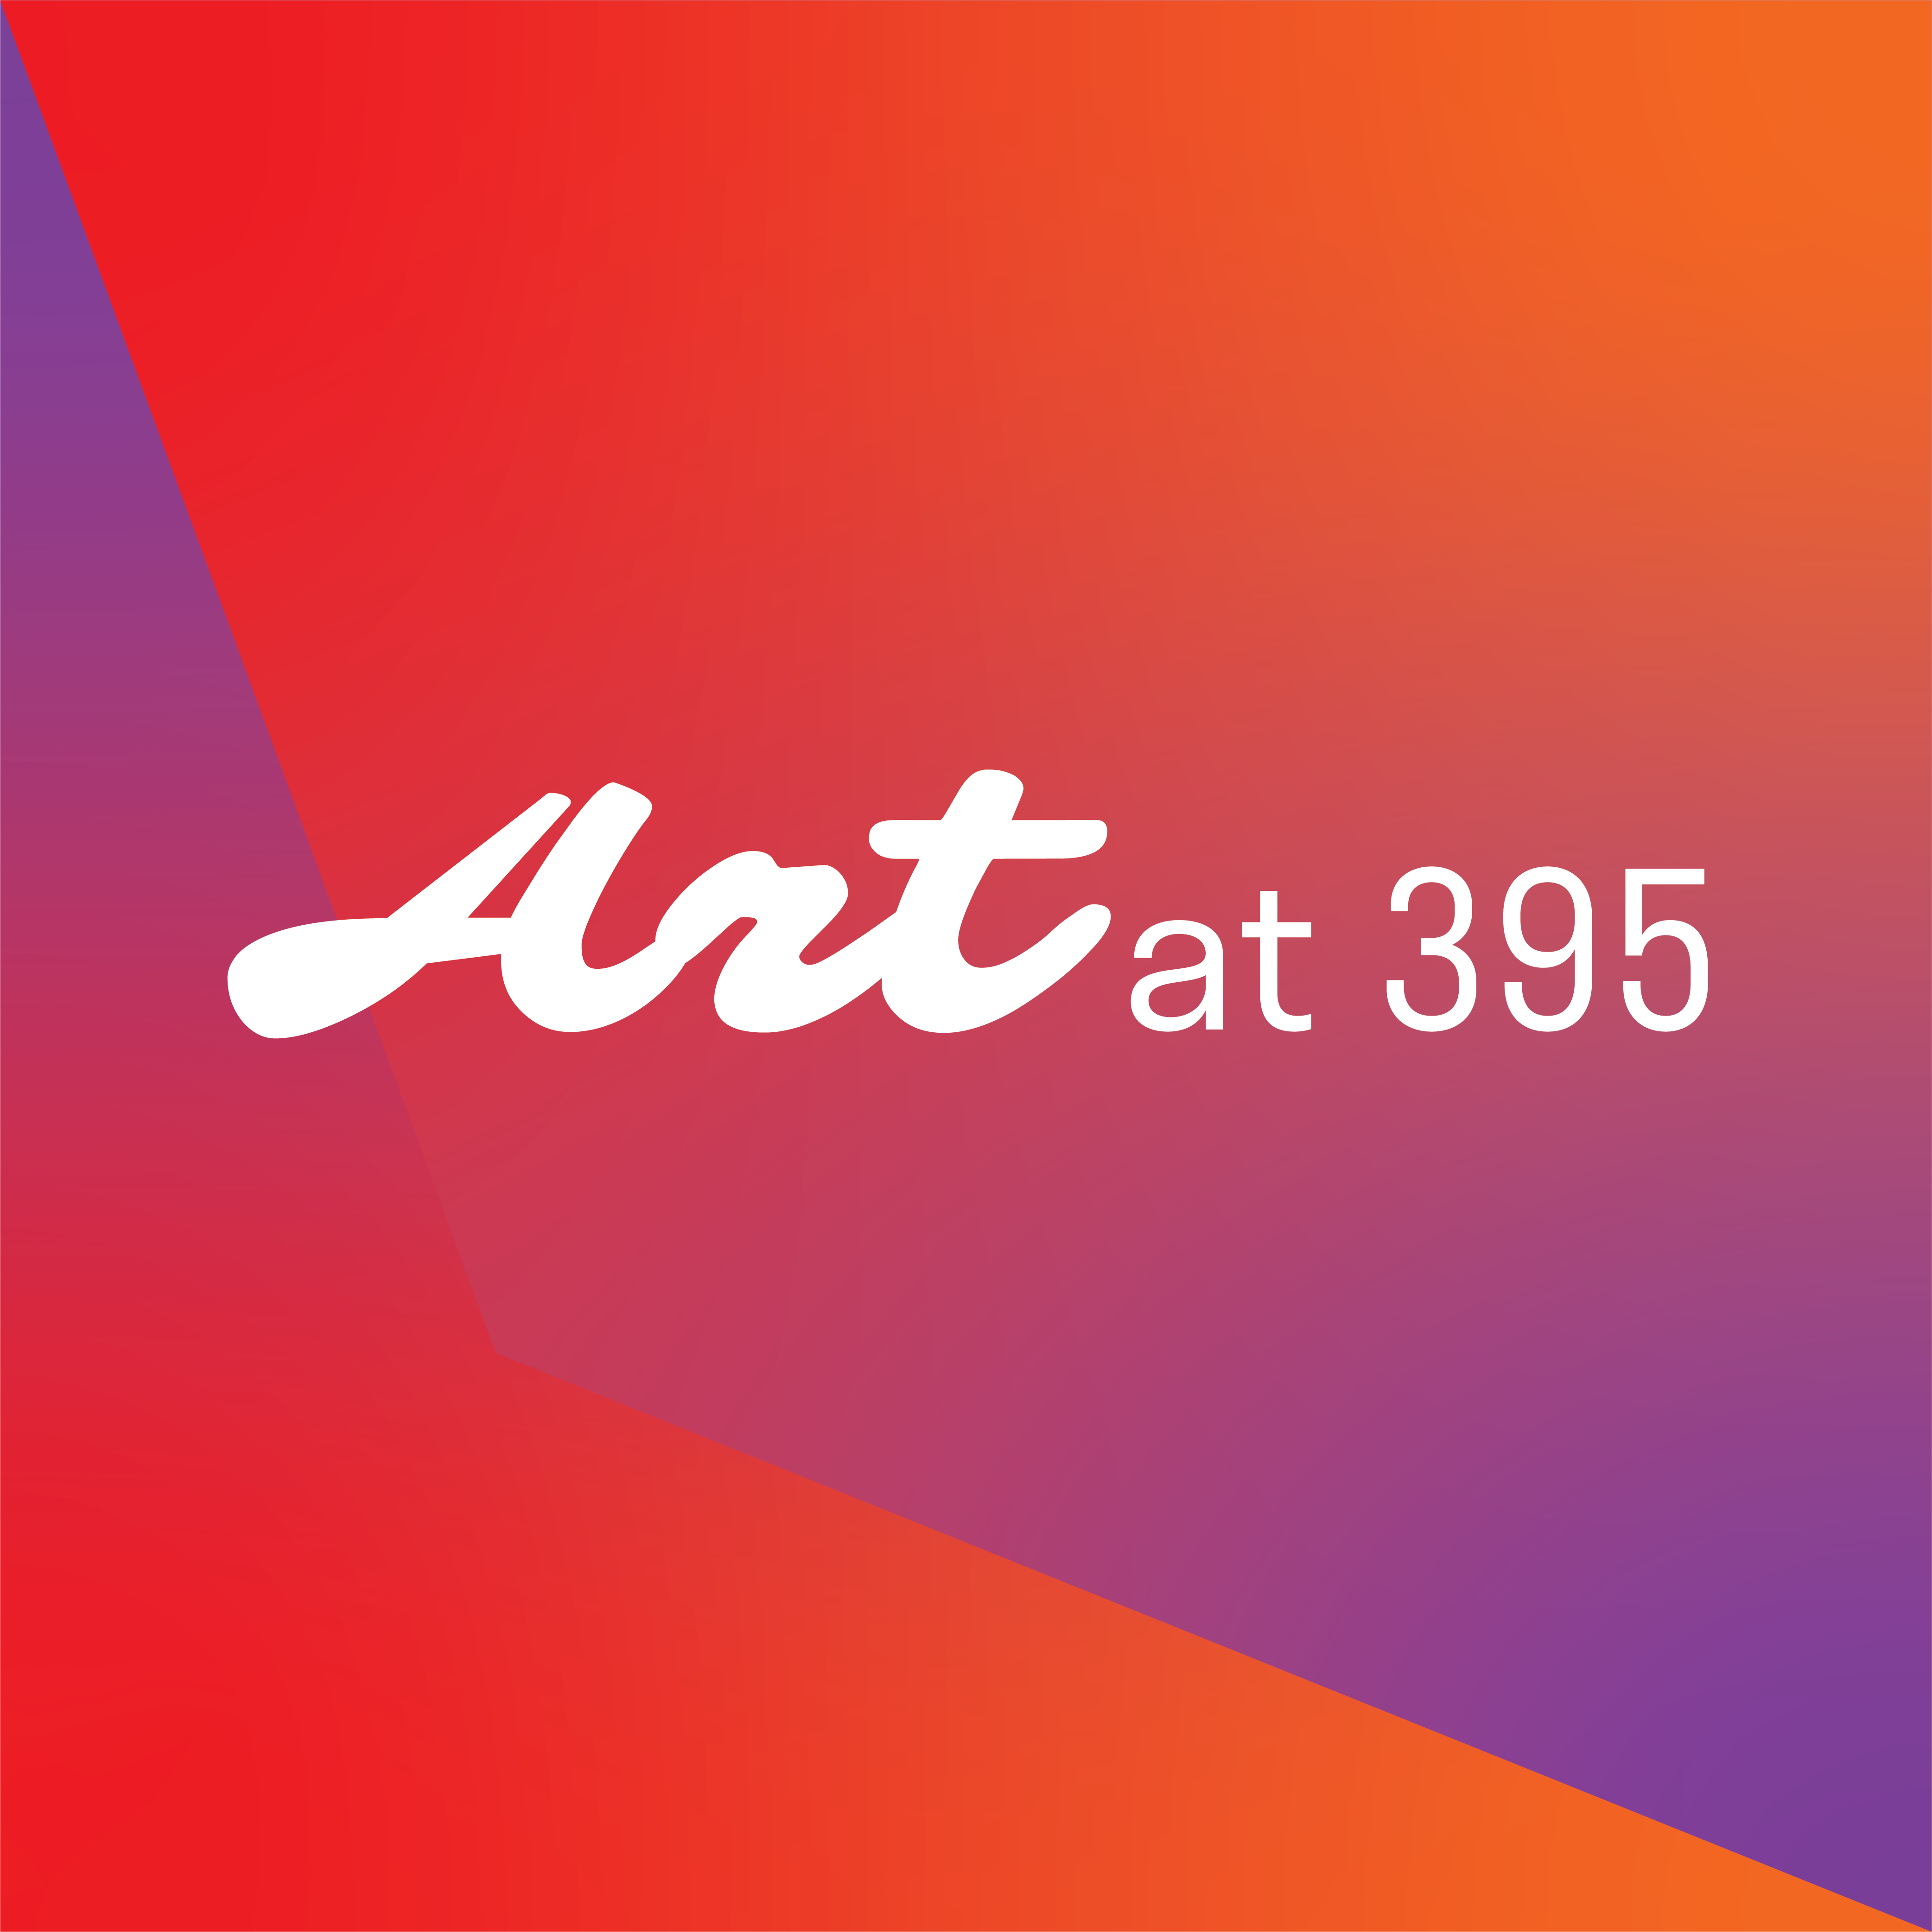 Art at 395